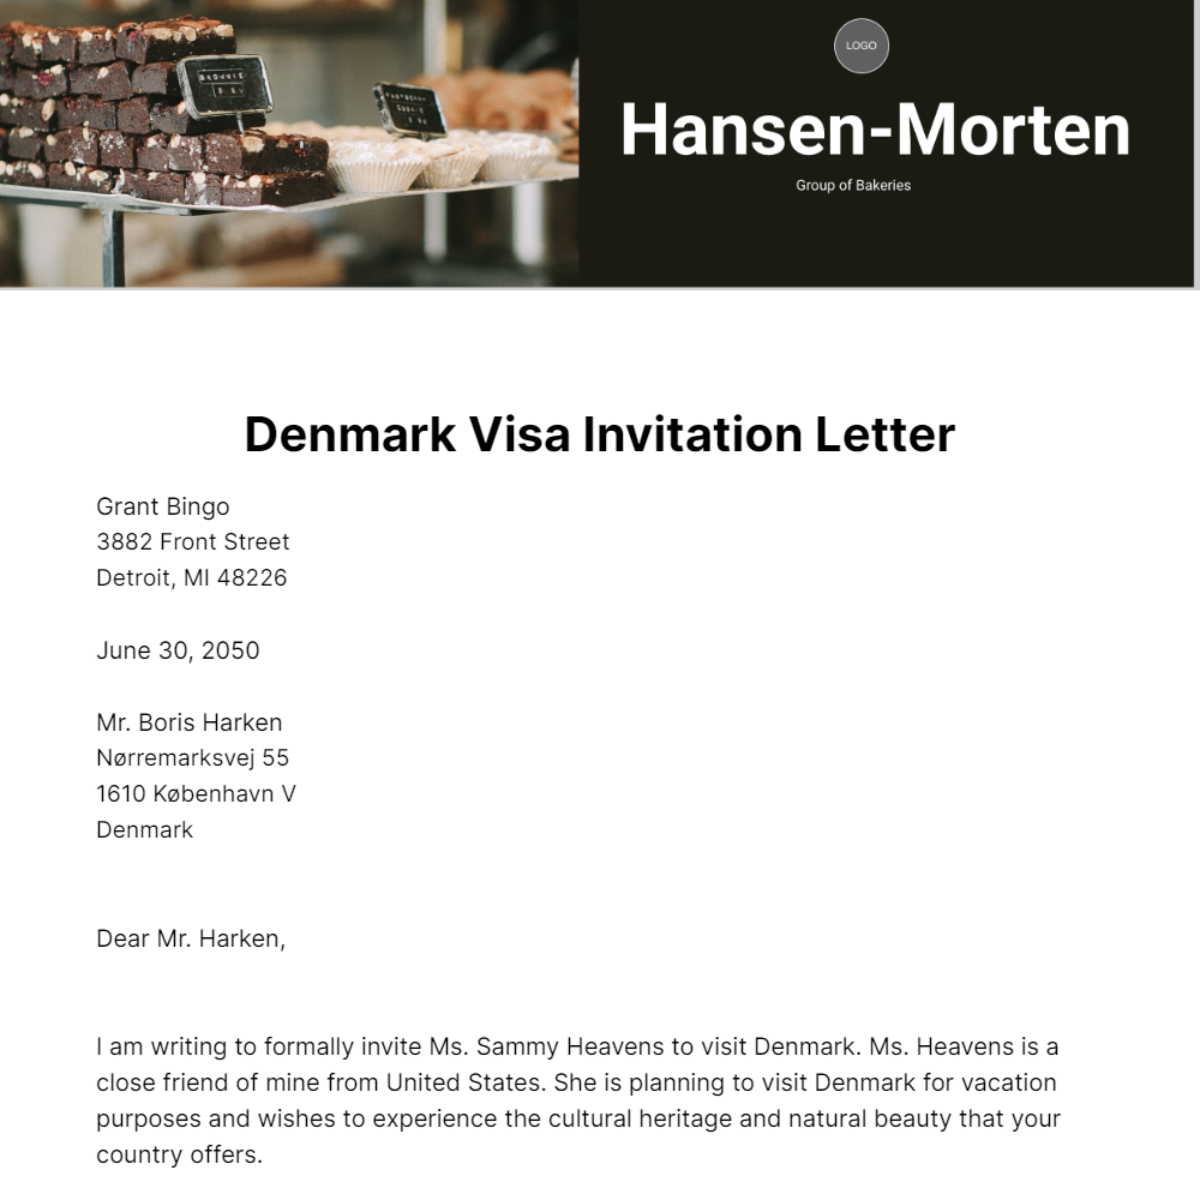 Denmark Visa Invitation Letter Template